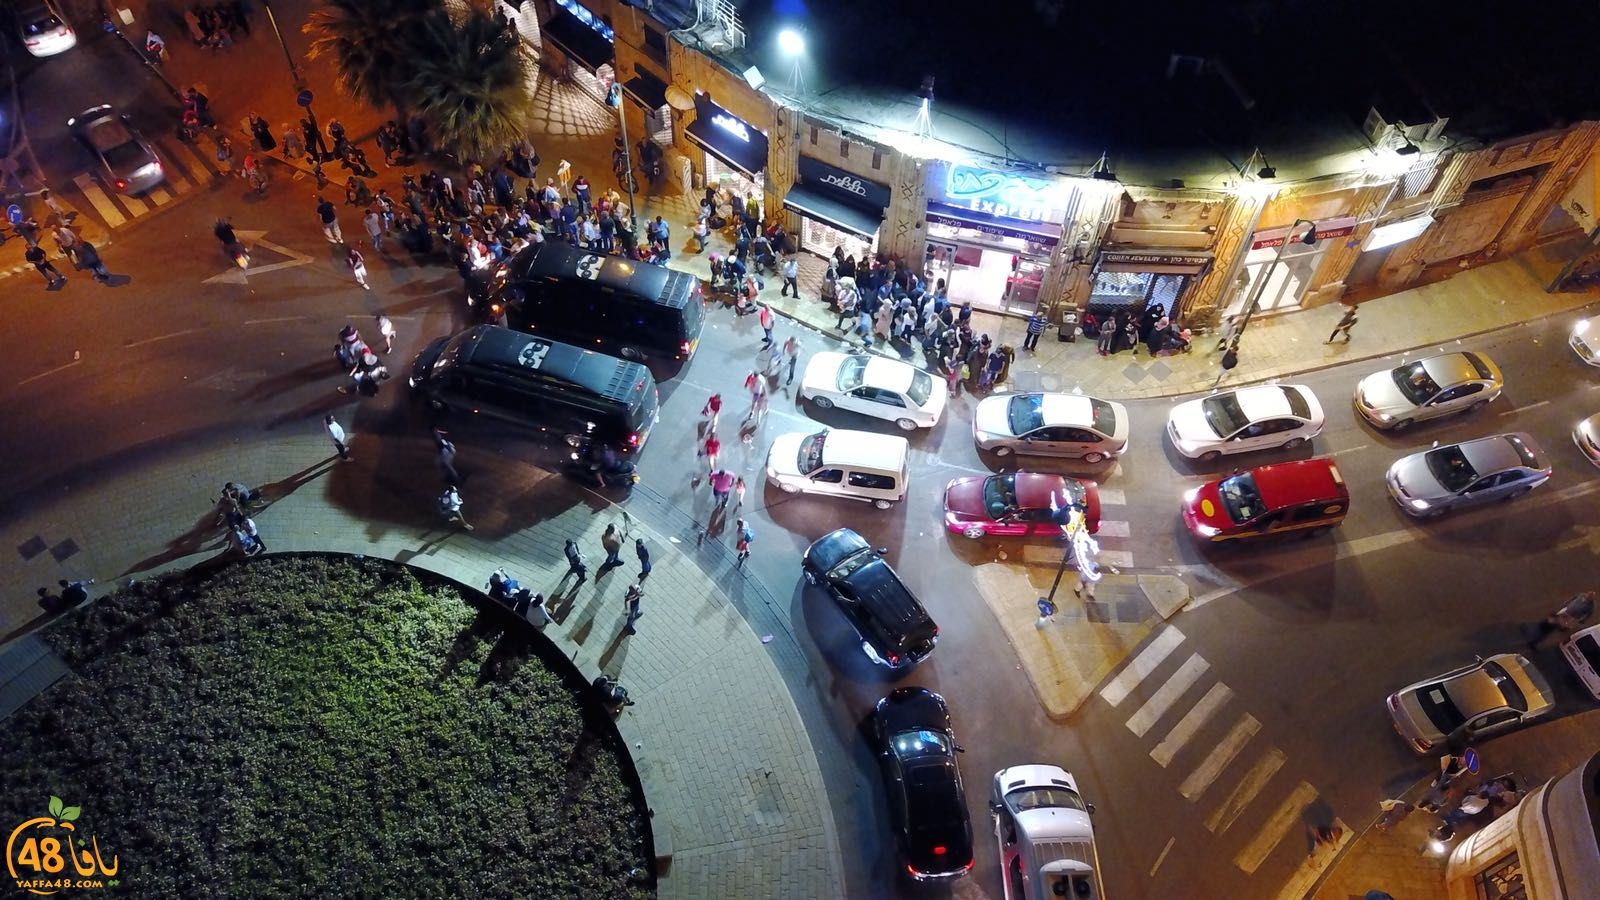  فيديو: مطاعم حاج كحيل بيافا محل جذب النزلاء والوافدين الى يافا في العيد 